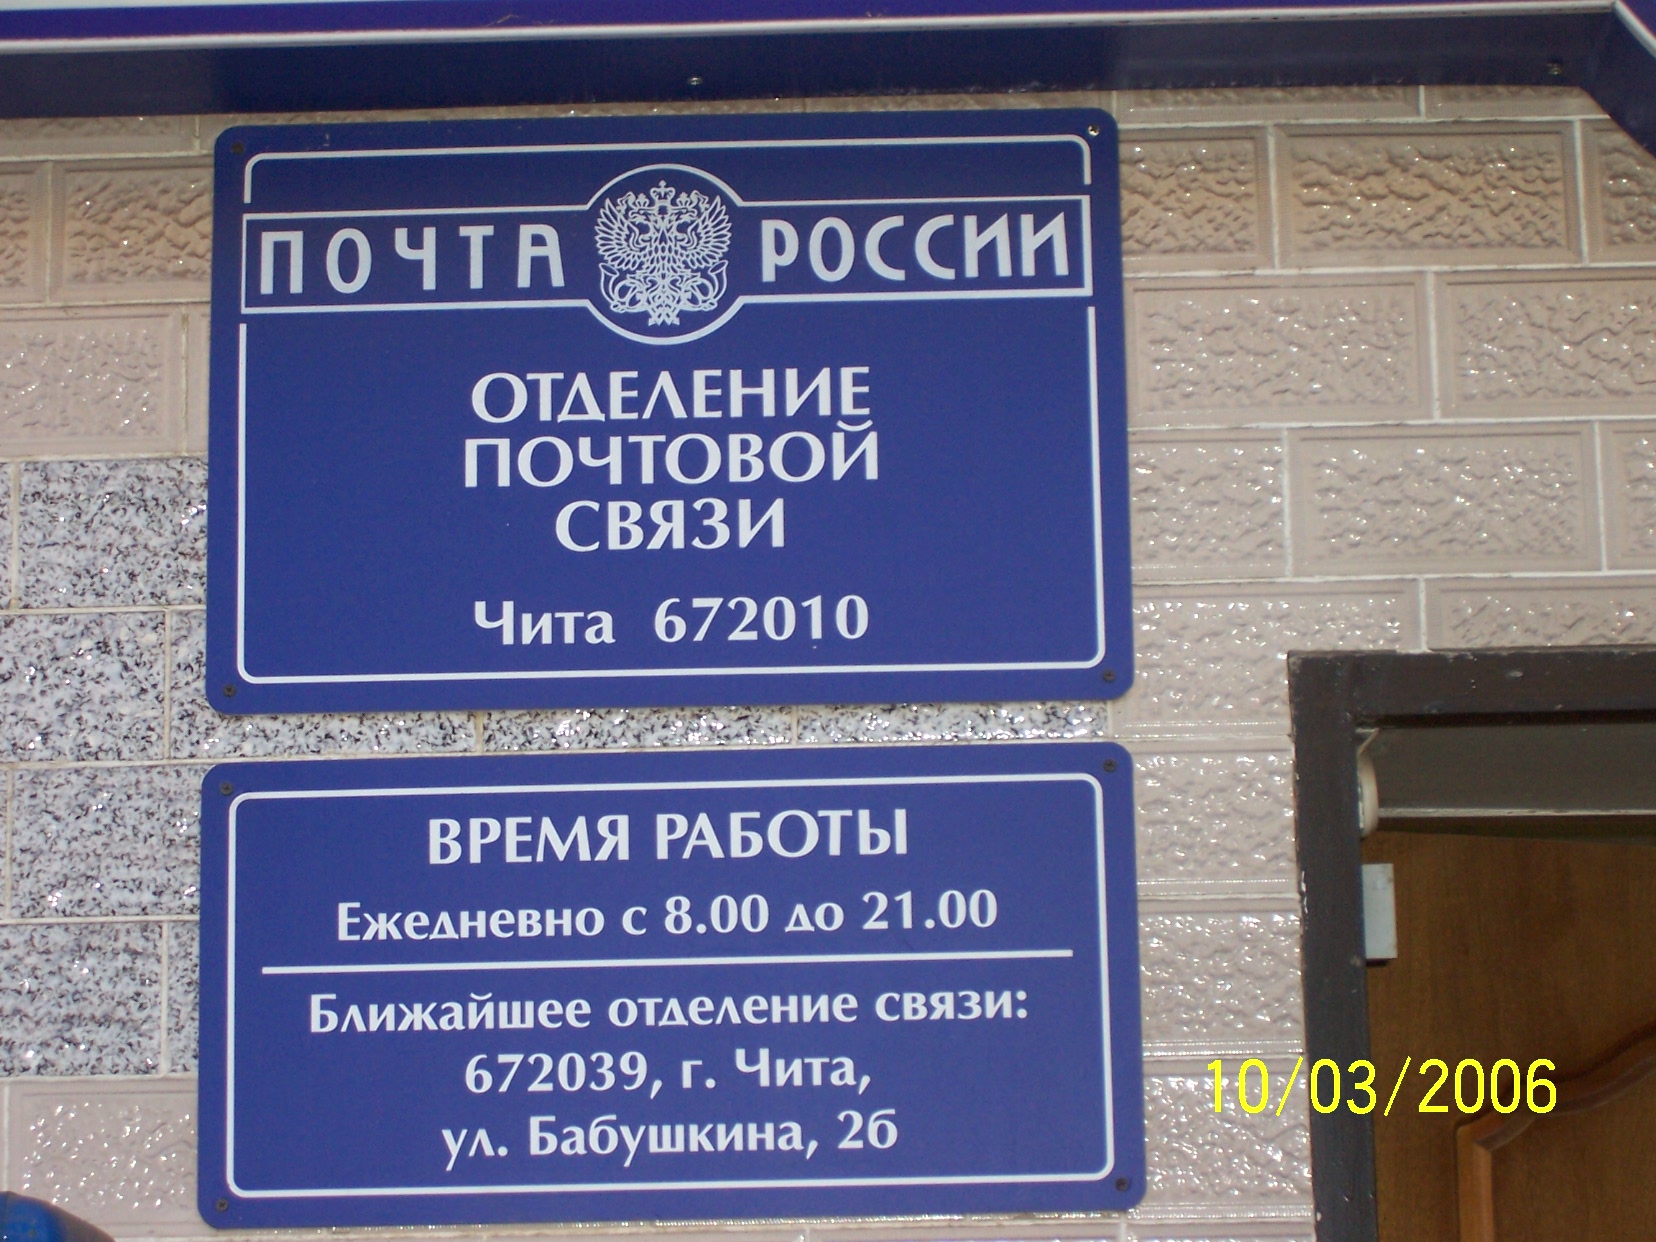 ВХОД, отделение почтовой связи 672010, Забайкальский край, Чита